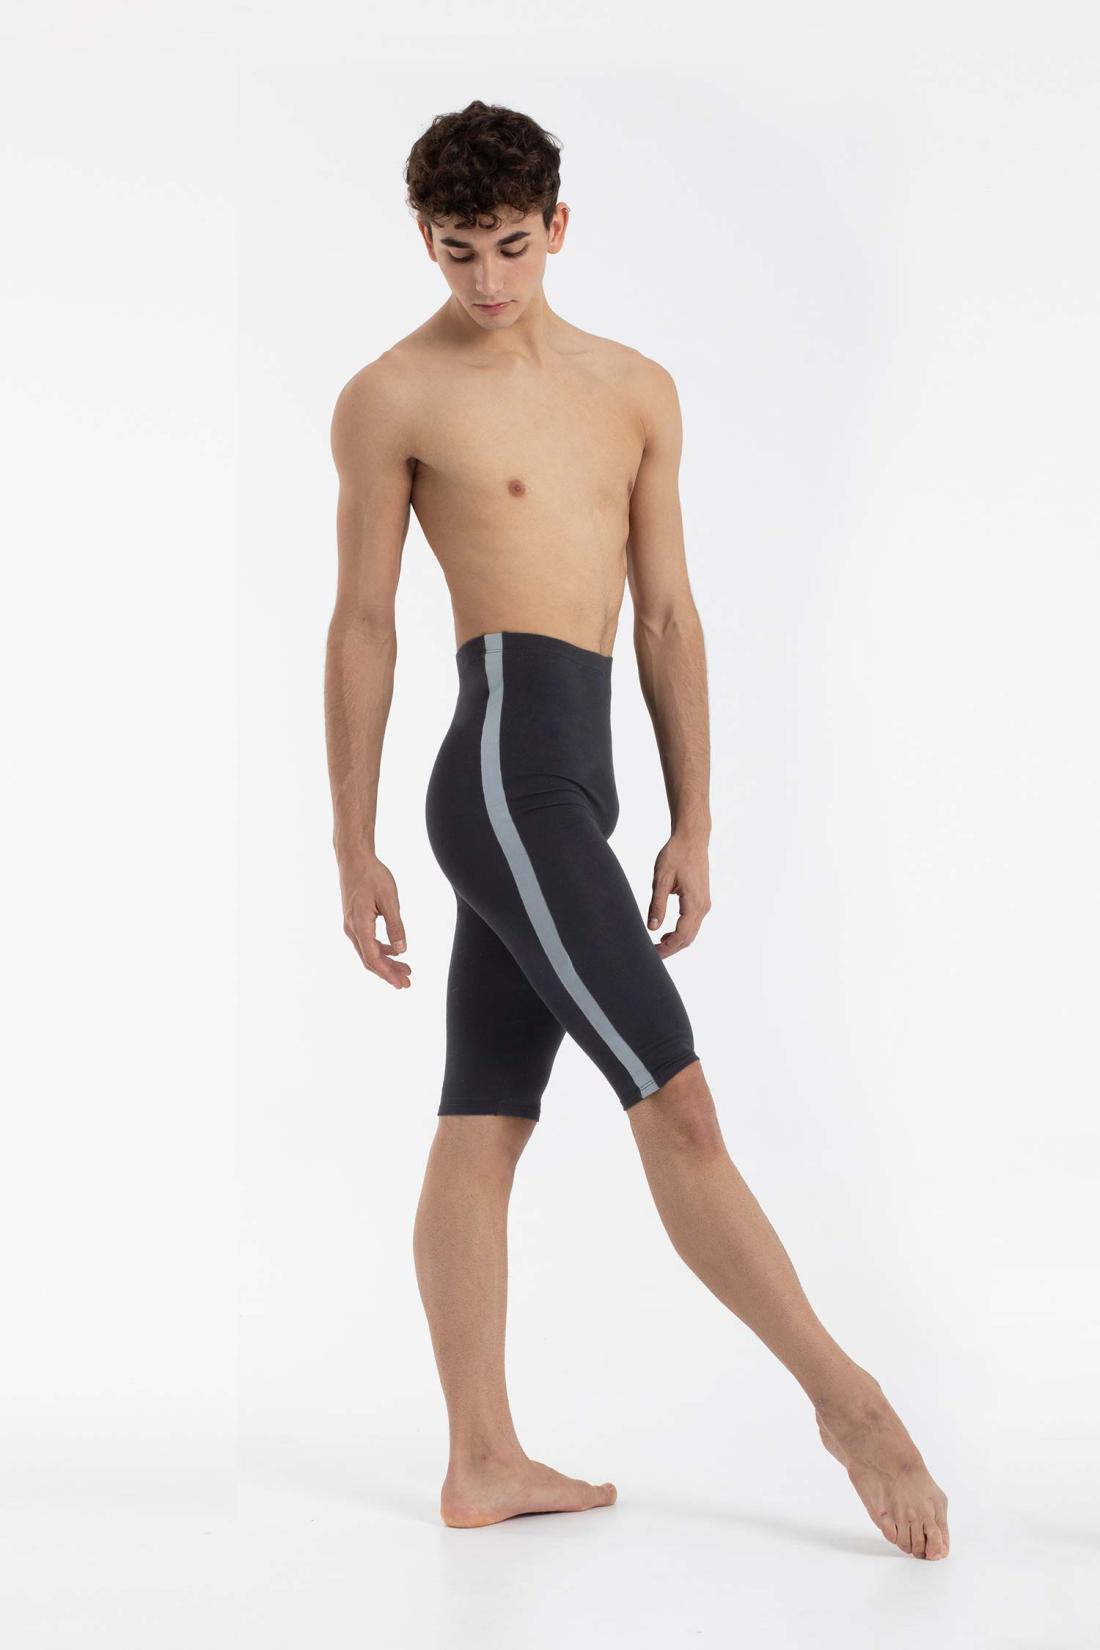 Pantalón corto ciclista con raya lateral para Hombre de Ballet Danza Intermezzo